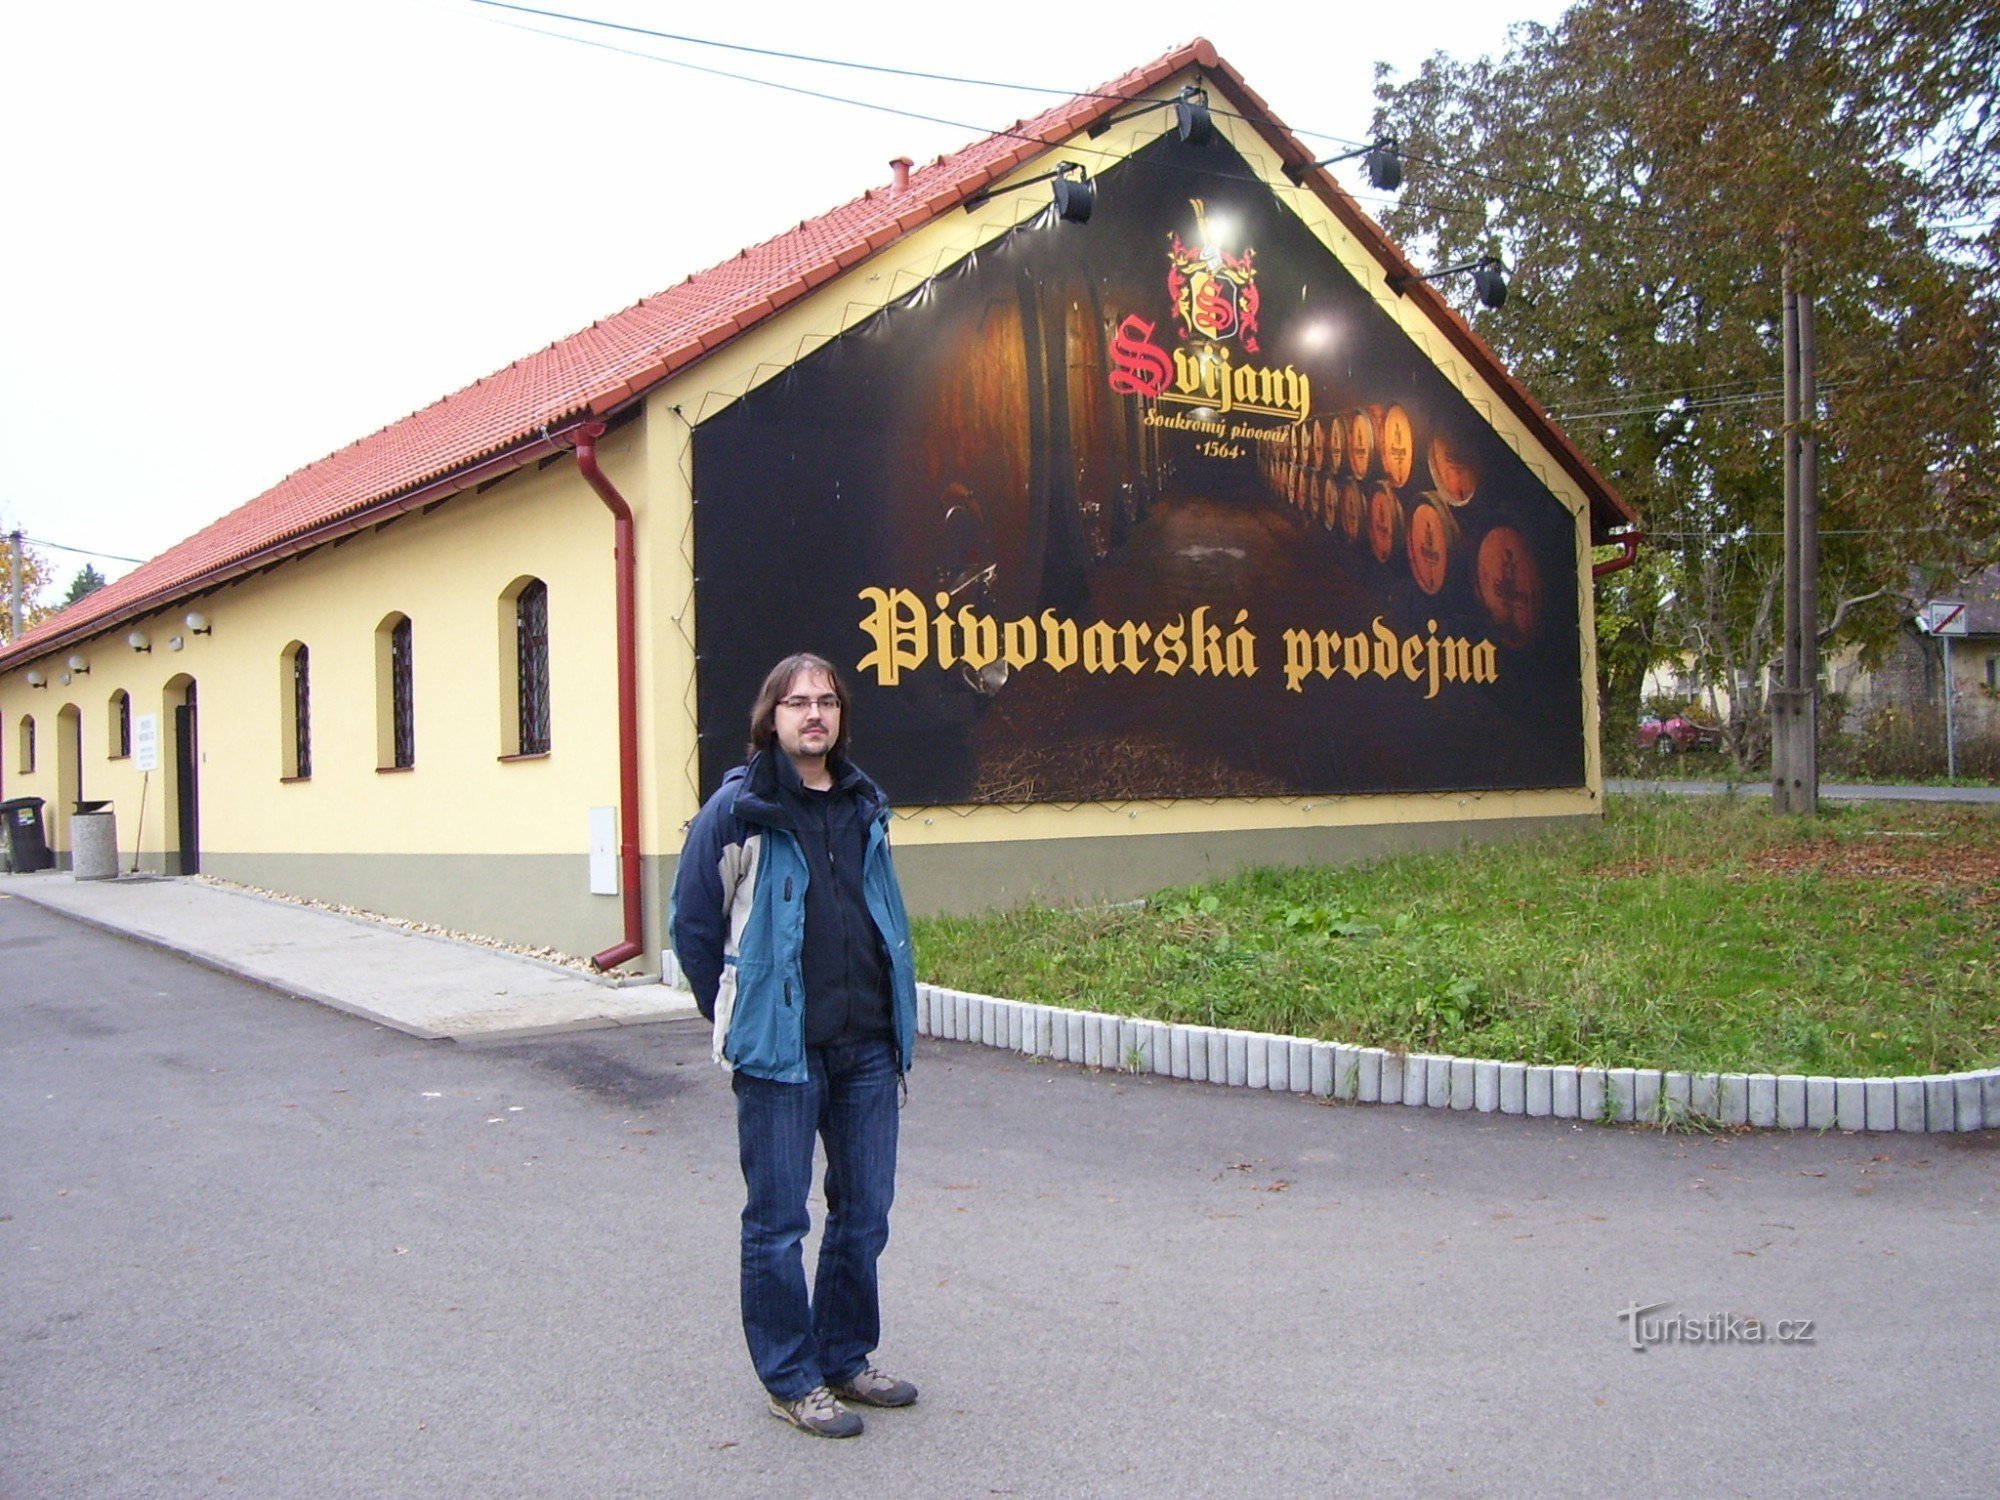 Nhà máy bia Svijany